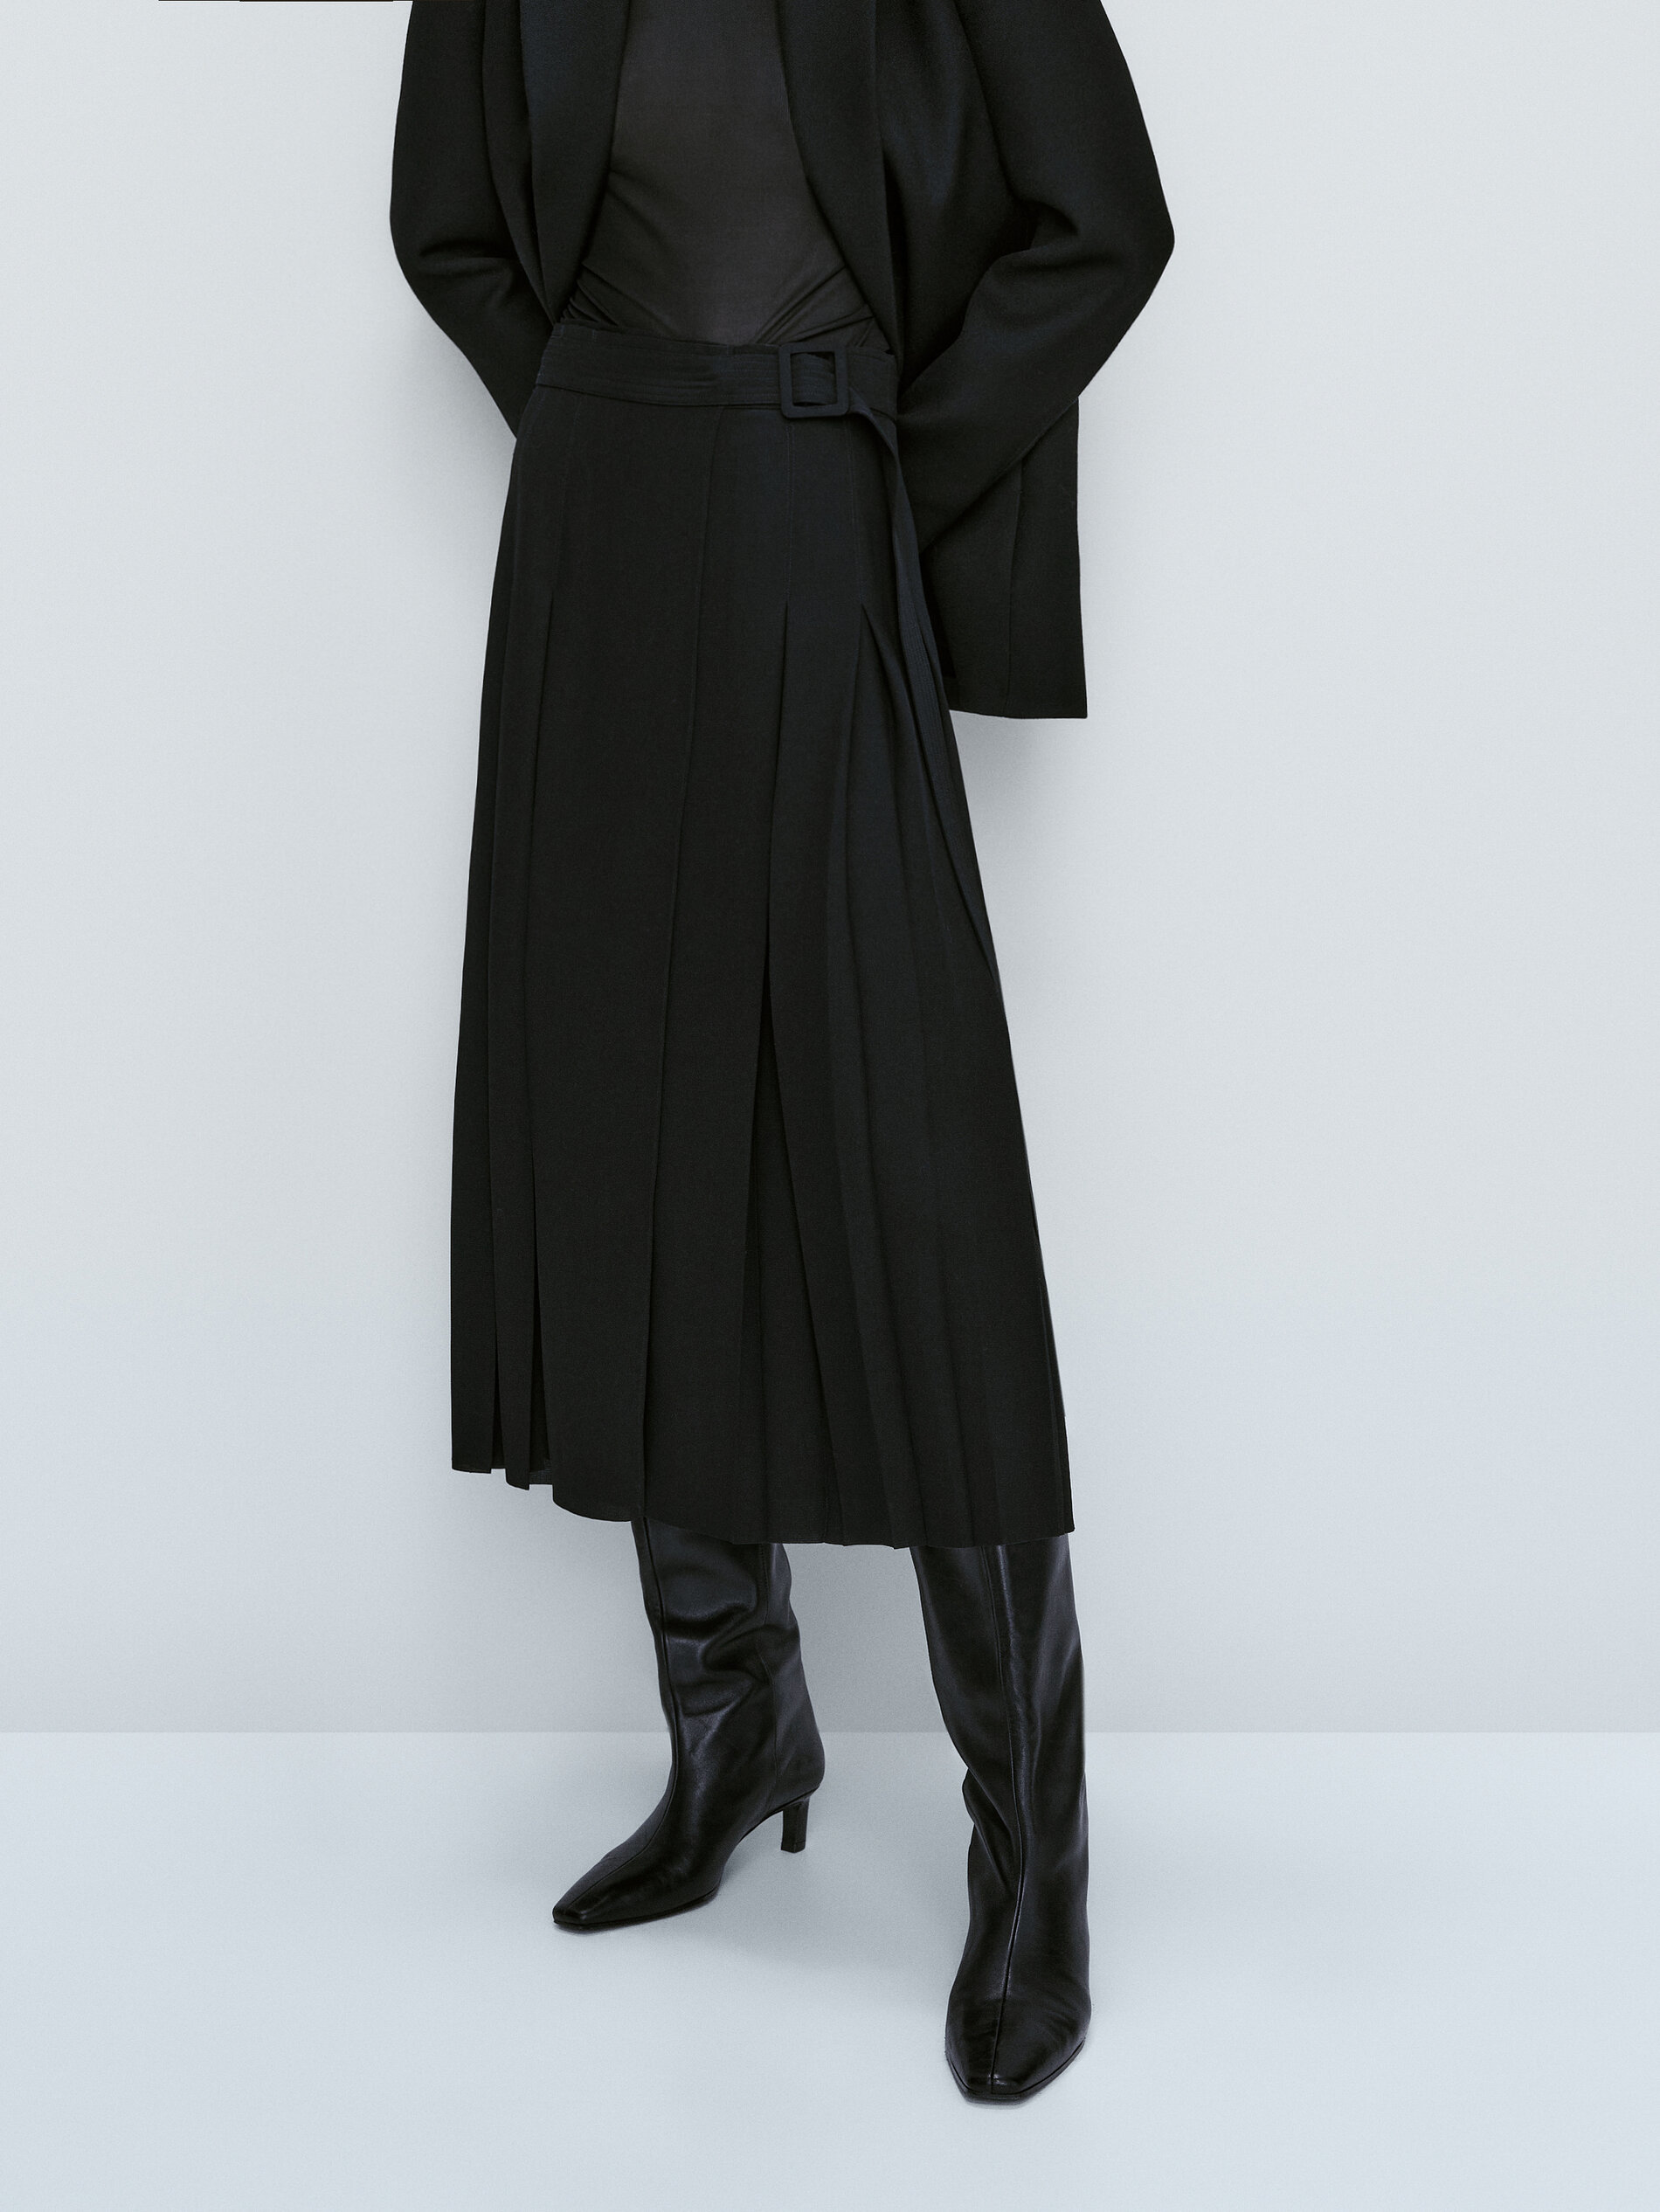 Falda de tablas de Massimo Dutti (79,95 euros).